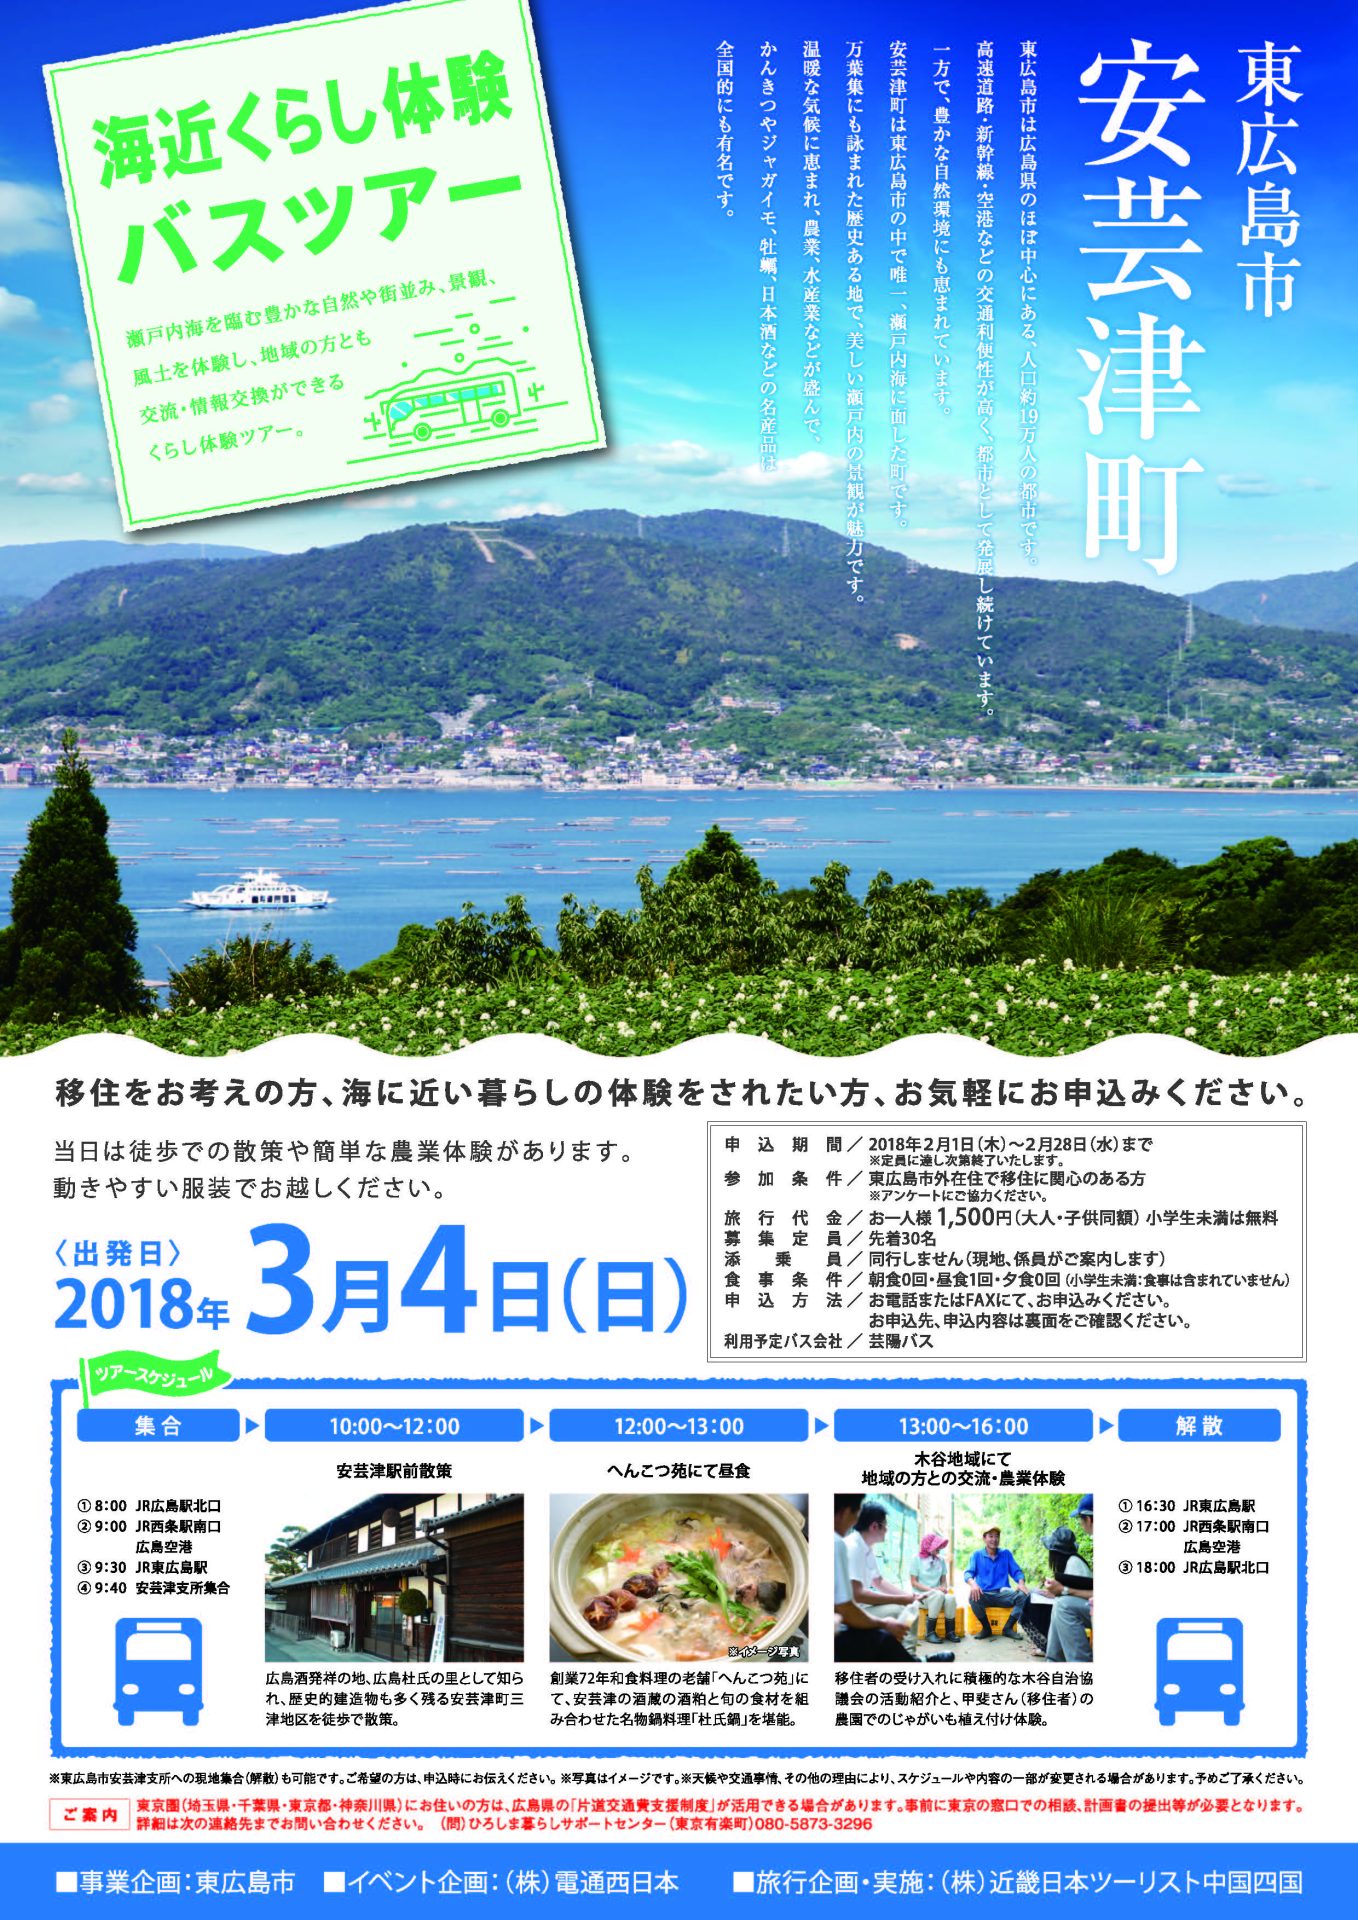 東広島市安芸津町・海近くらし体験バスツアー | 移住関連イベント情報